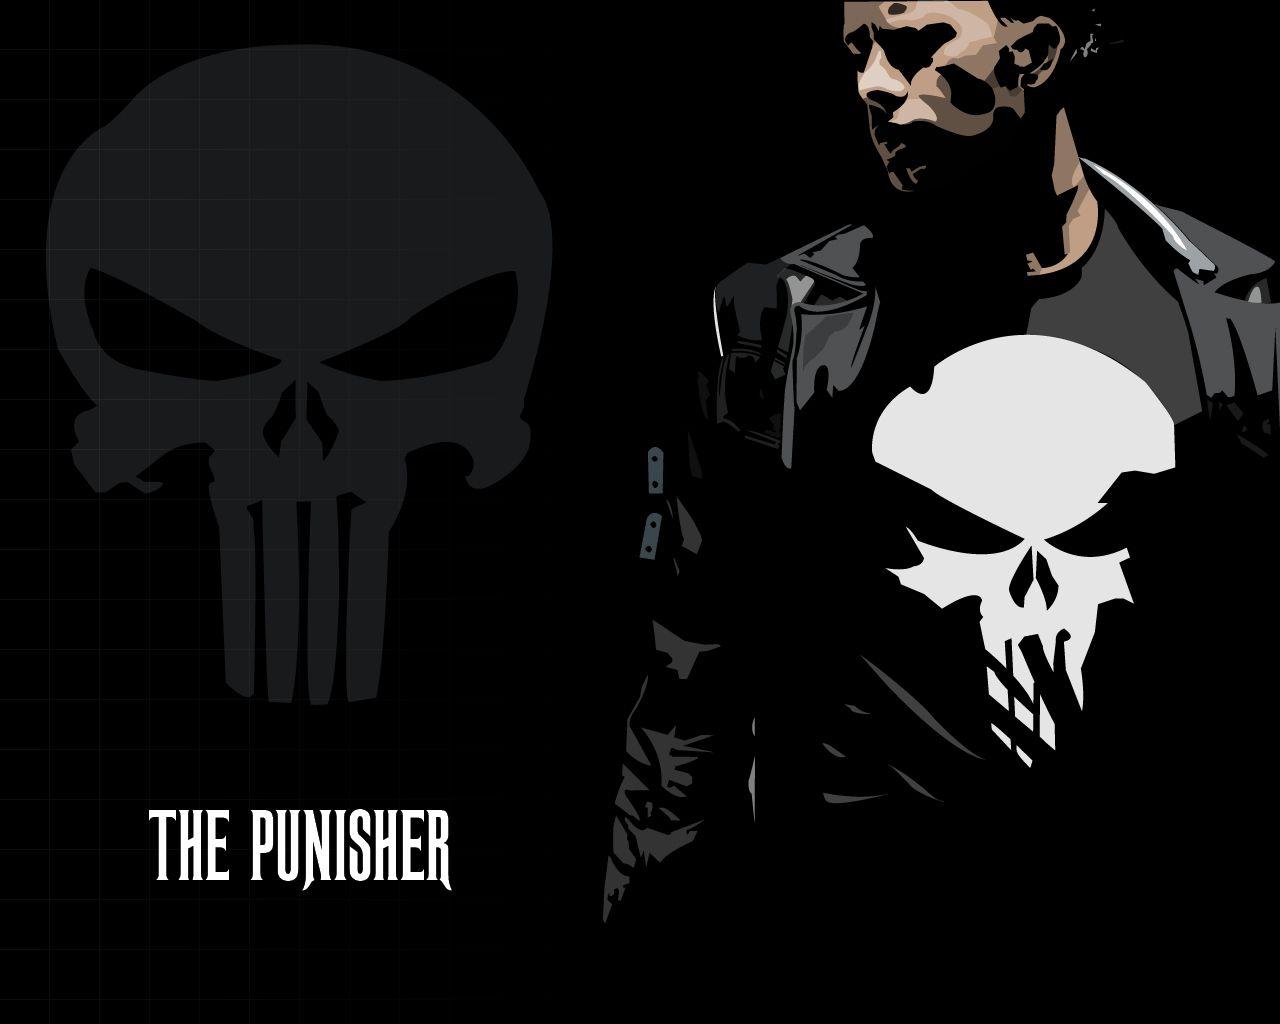 Punisher Wallpaper HD Widescreen 9116 Wallpaper Site